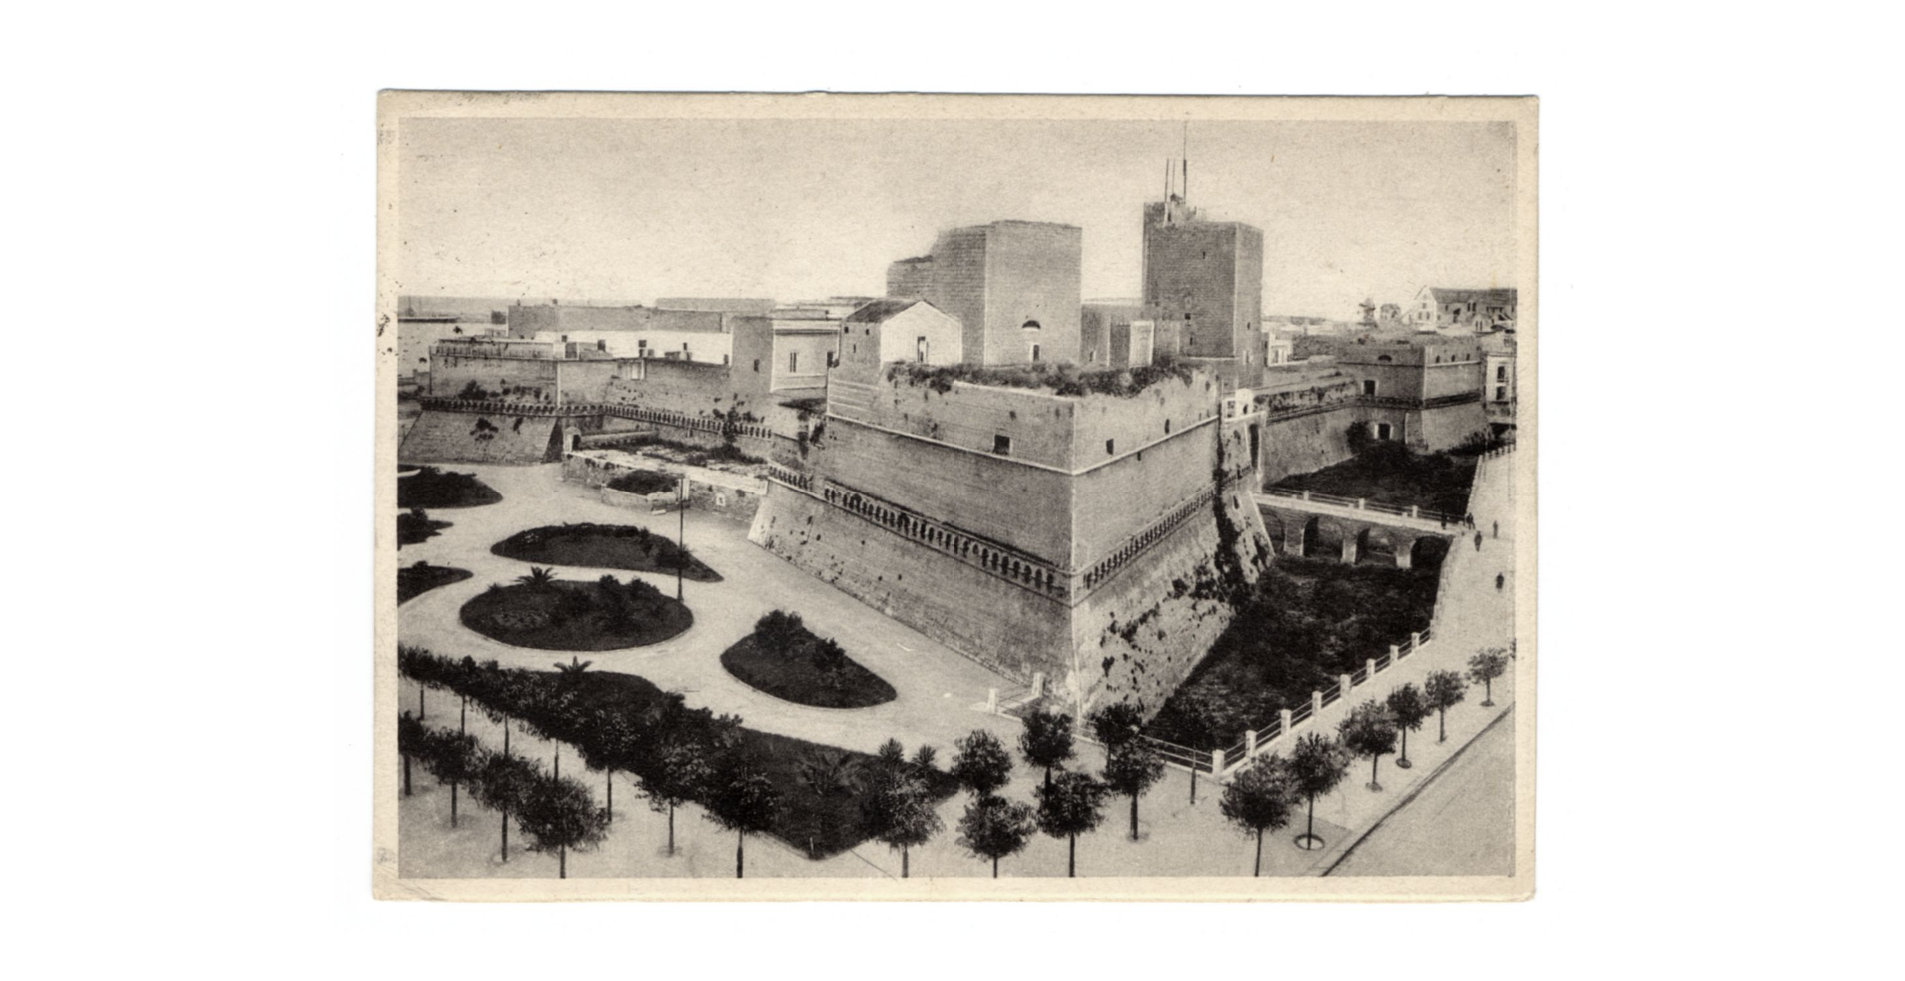 Fotografo non identificato, Bari - Castello monumentale, 1939, FFC037135